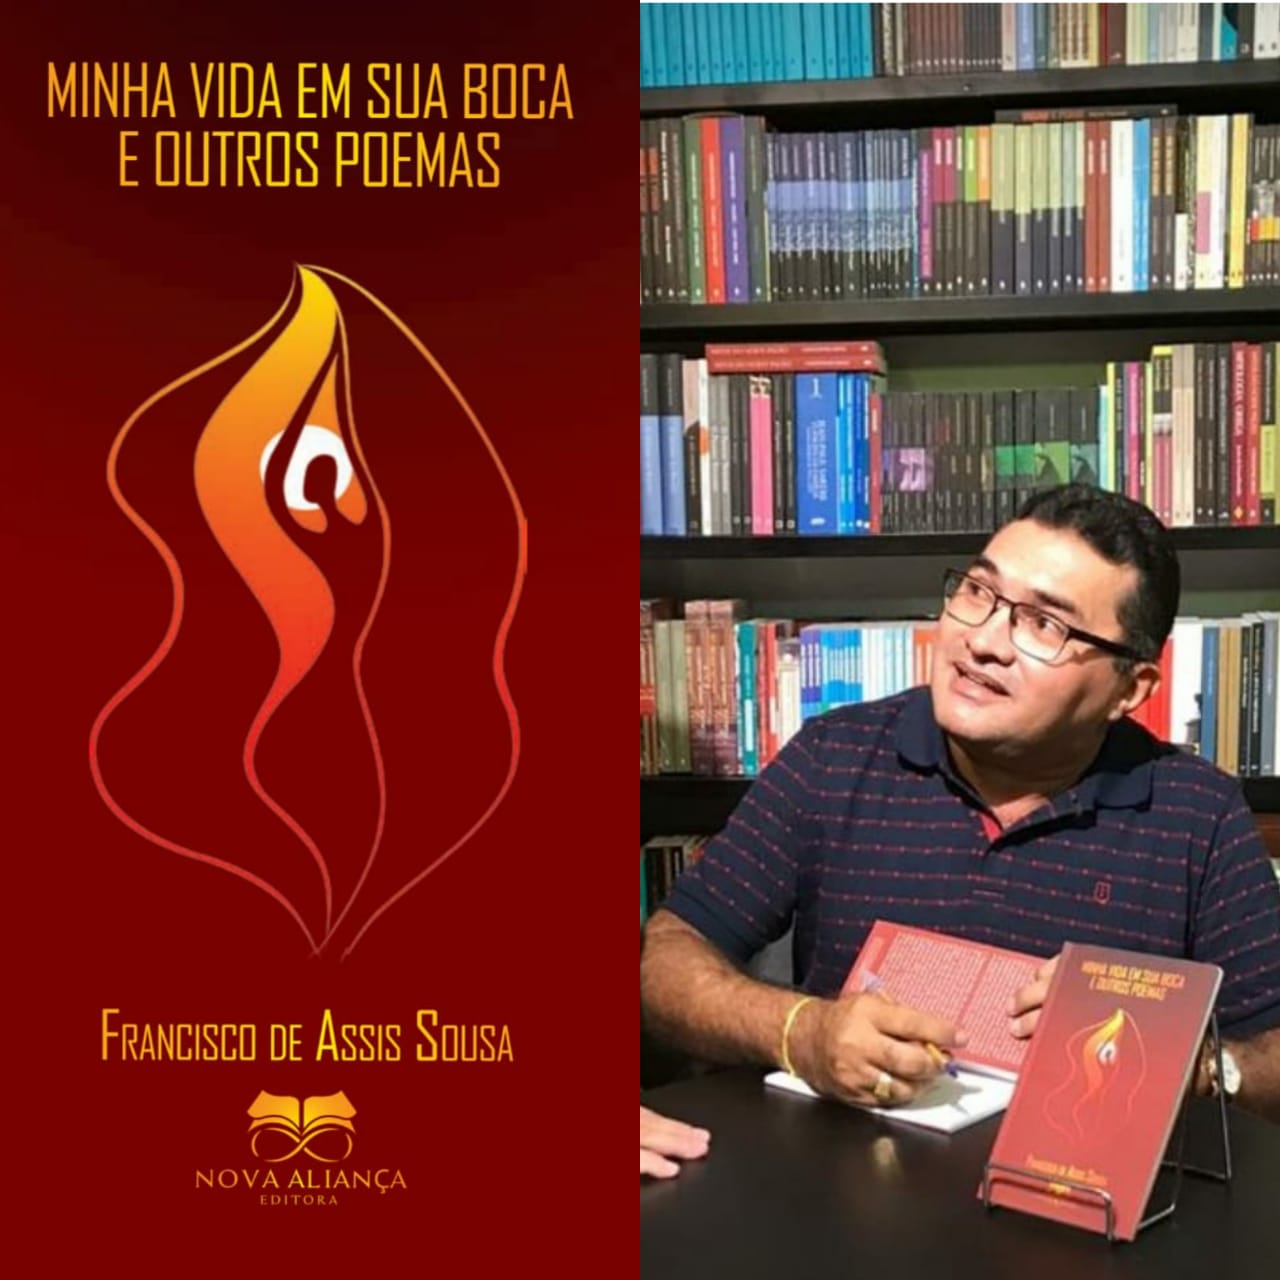 São Julião | Professor Francisco de Assis Sousa lança livro de poesia erótica neste sábado (01); confira!